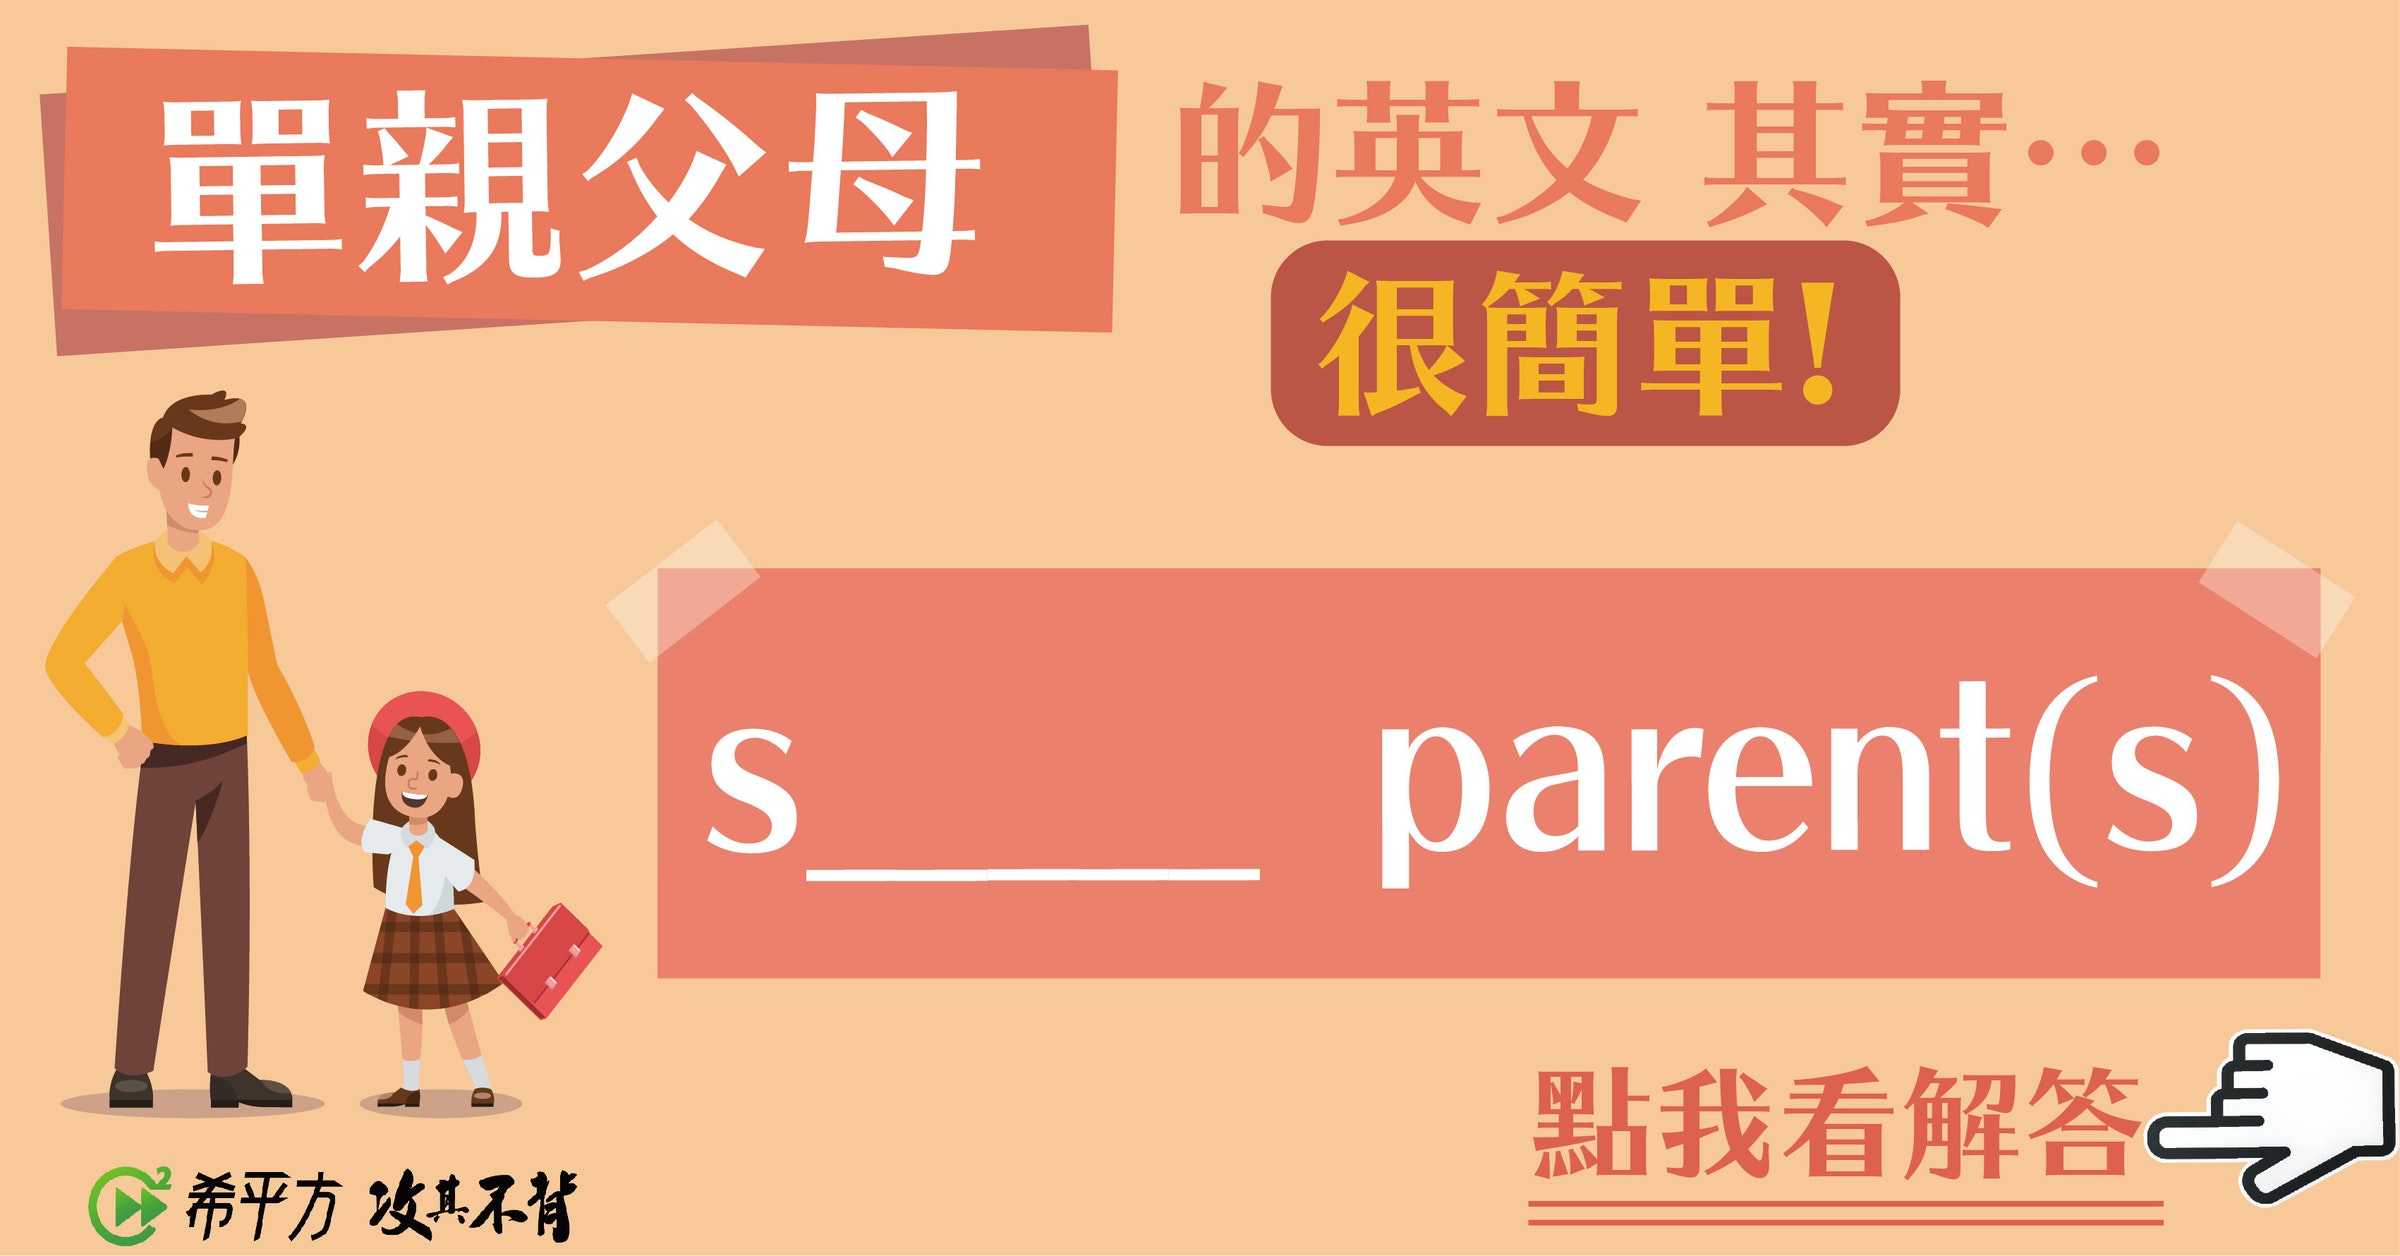 照片中提到了單親父母的英文 其實…、很簡單!、S_ parent(s)，包含了橙子、旗幟、聯合、牌、動畫片